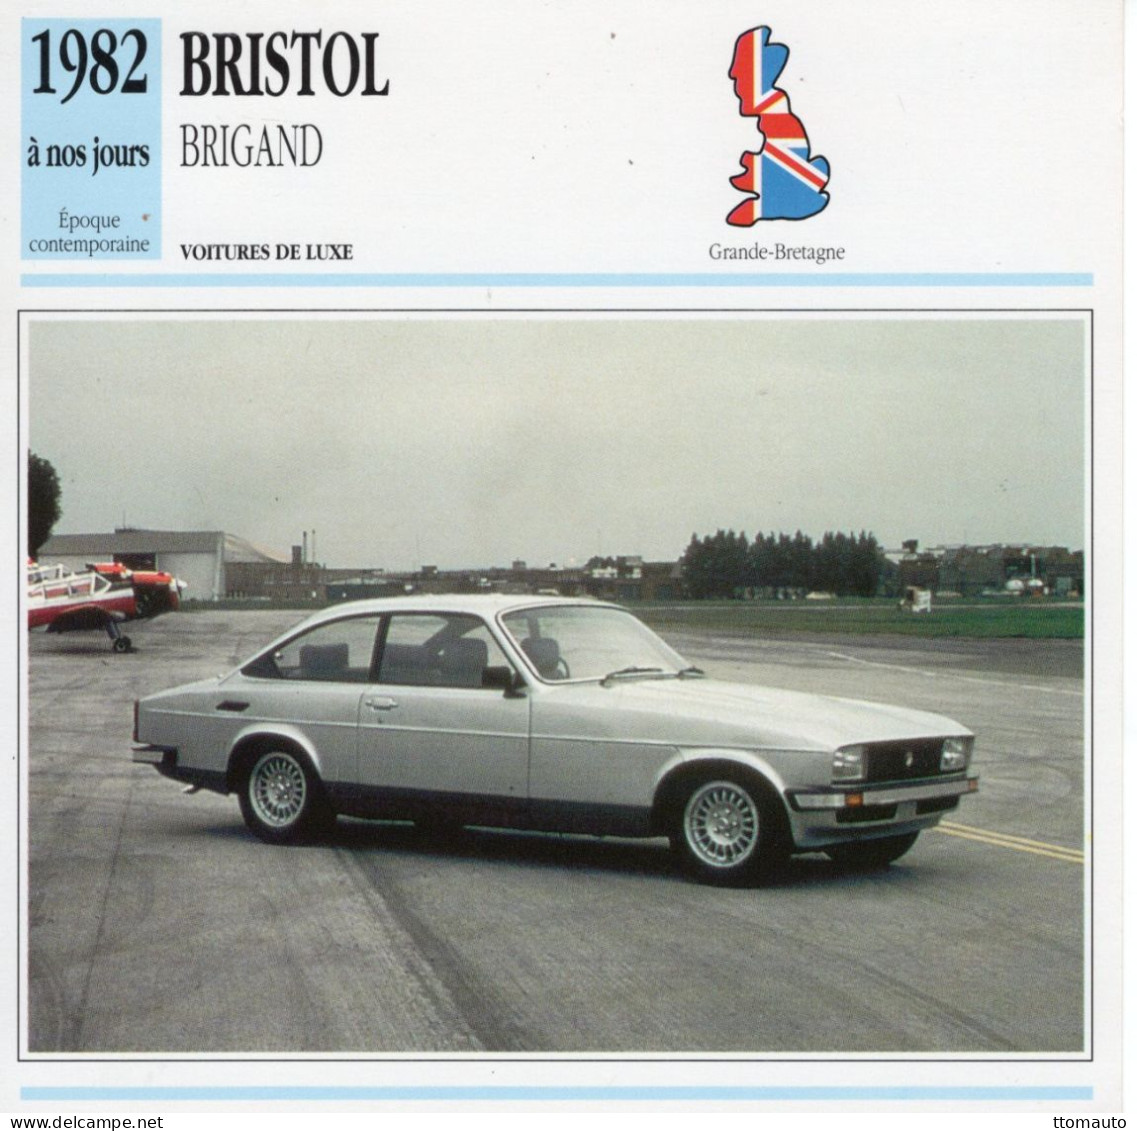 Bristol Brigand  -  1982  - Voiture De Luxe -  Fiche Technique Automobile (GB) - Automobili